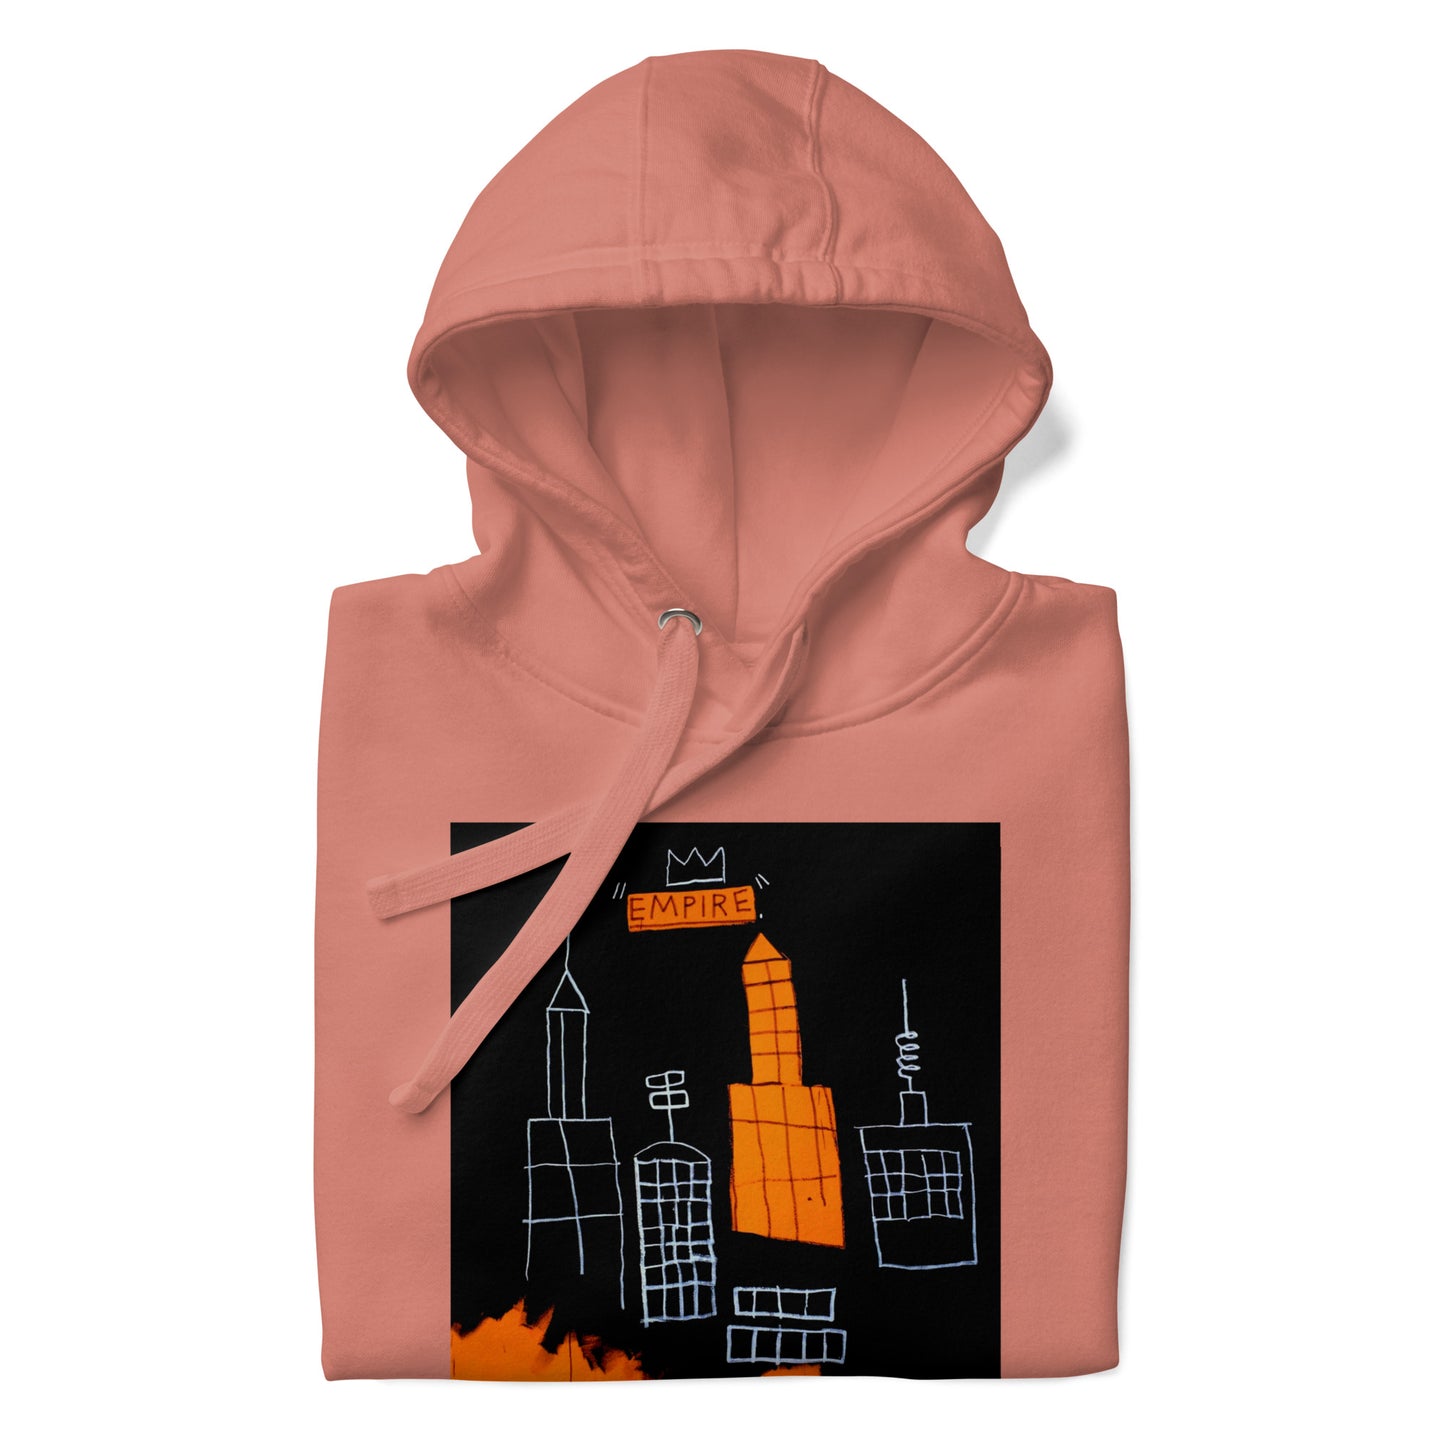 Jean-Michel Basquiat "Mecca" Artwork Printed Premium Streetwear Sweatshirt Hoodie Salmon Pink